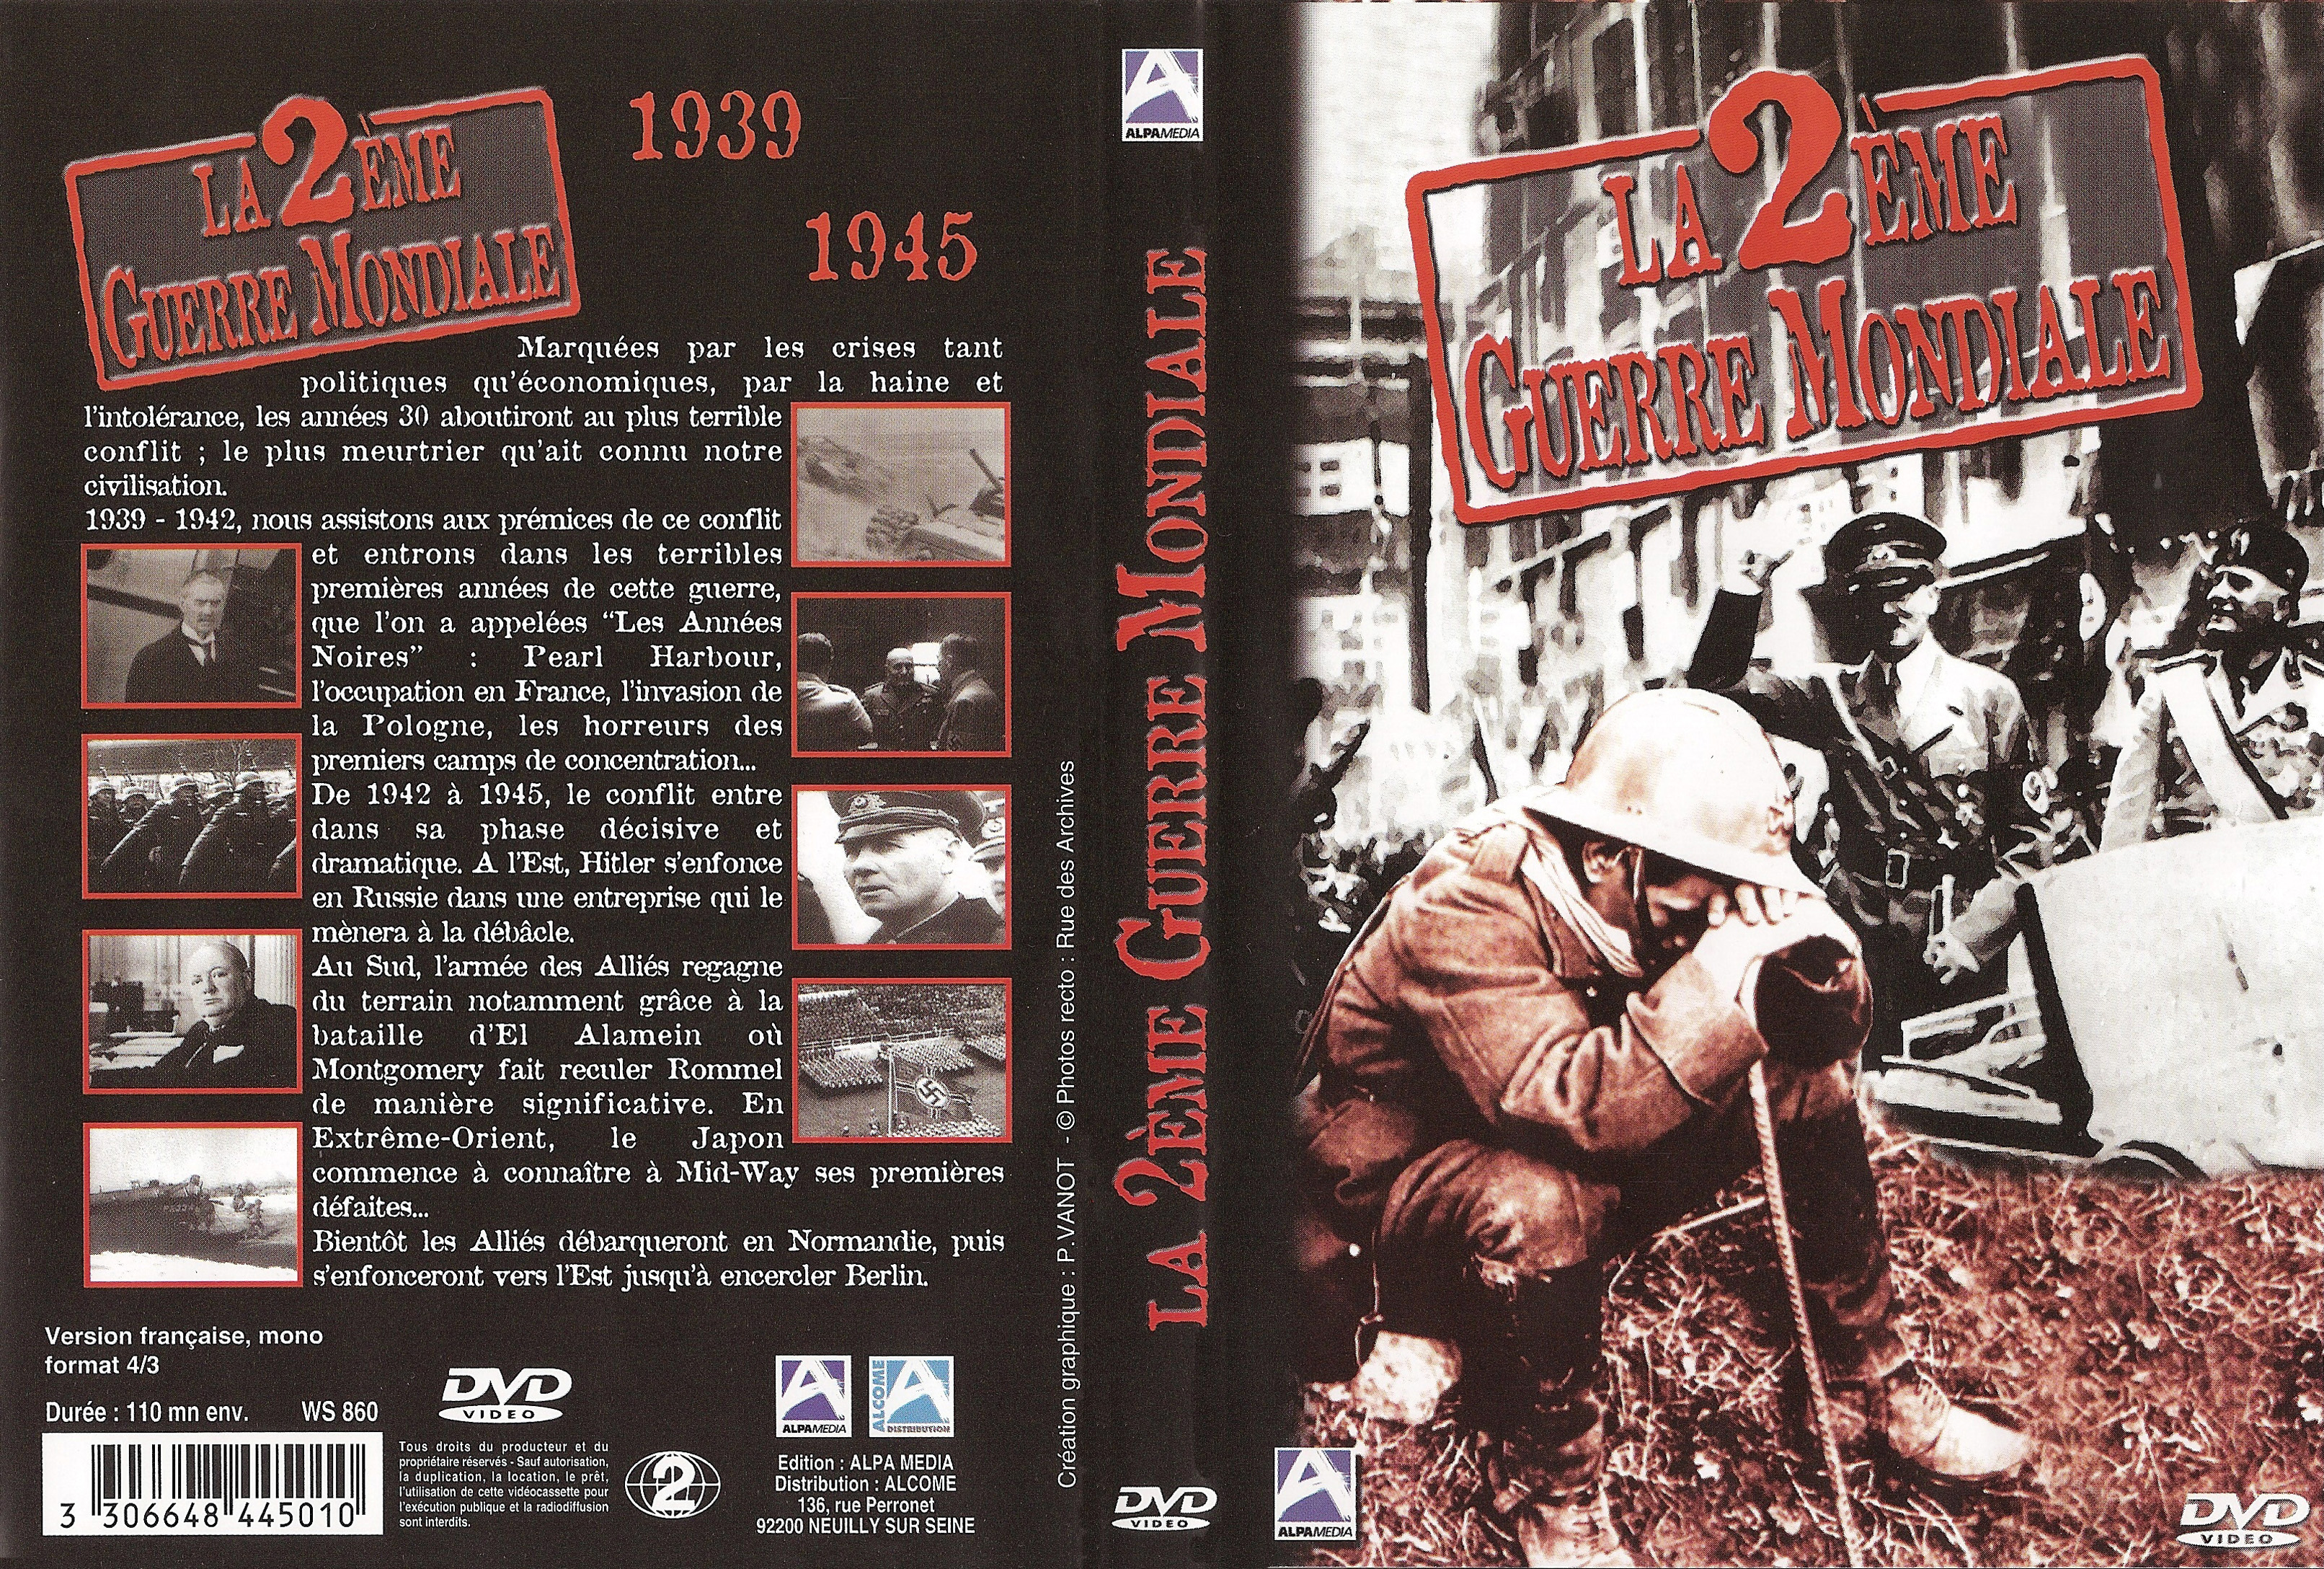 Jaquette DVD La 2 me guerre mondiale